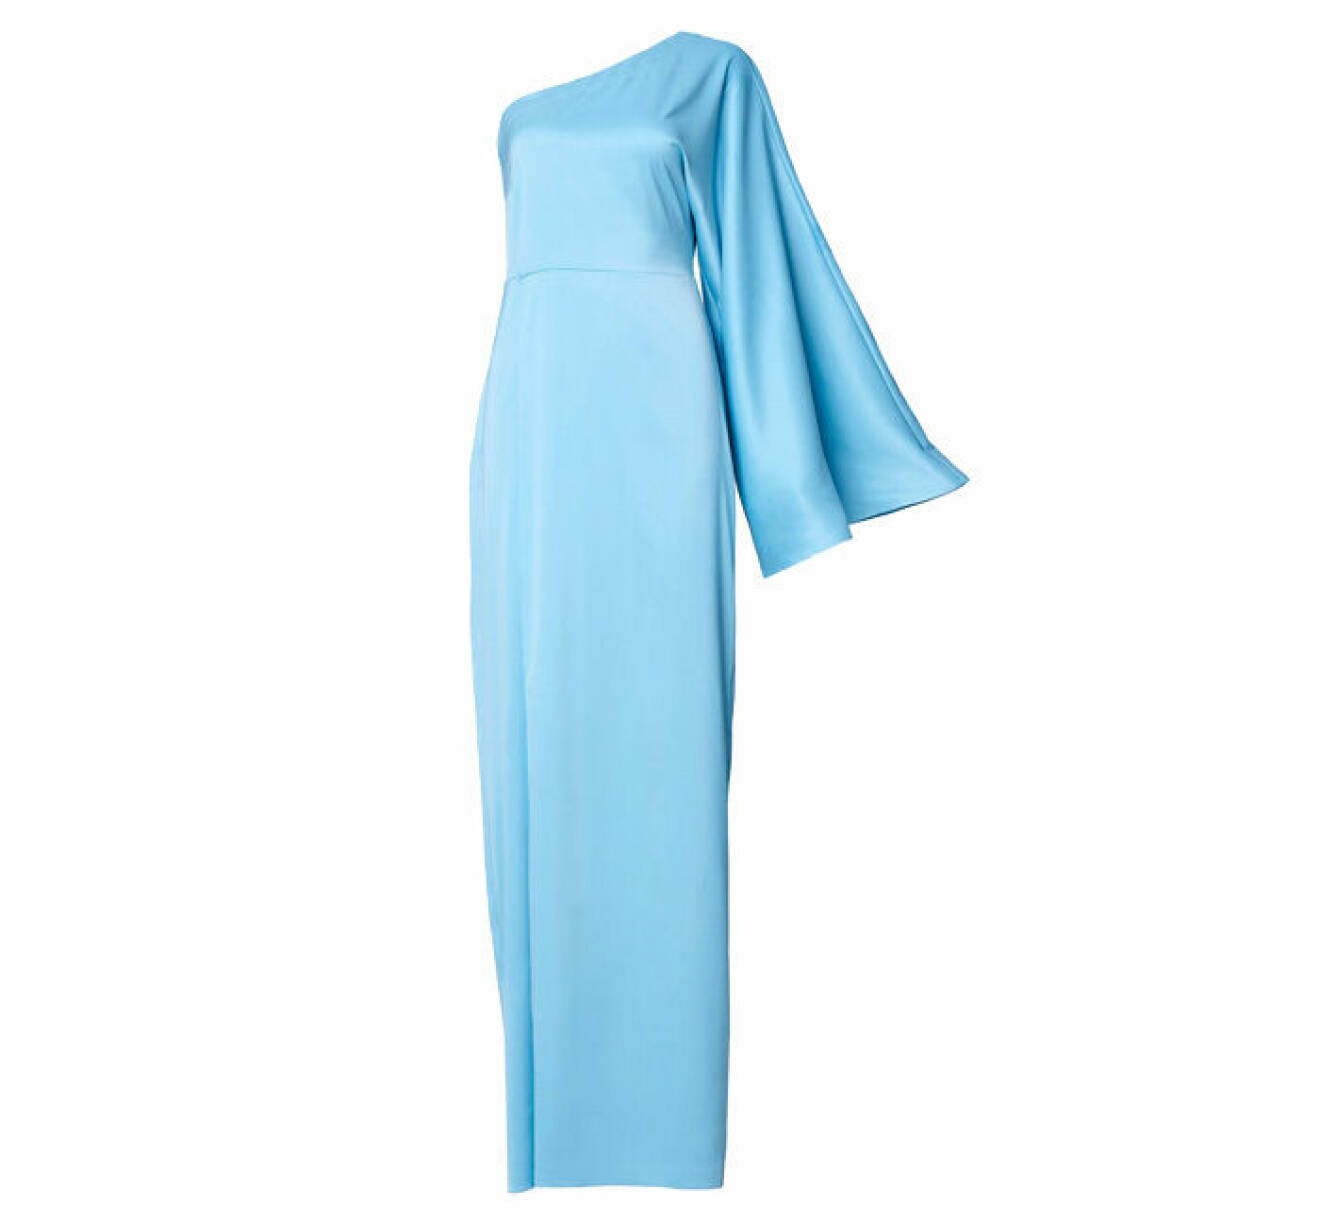 ljusblå långklänning med enaxlad design och markerad midja från Adoore